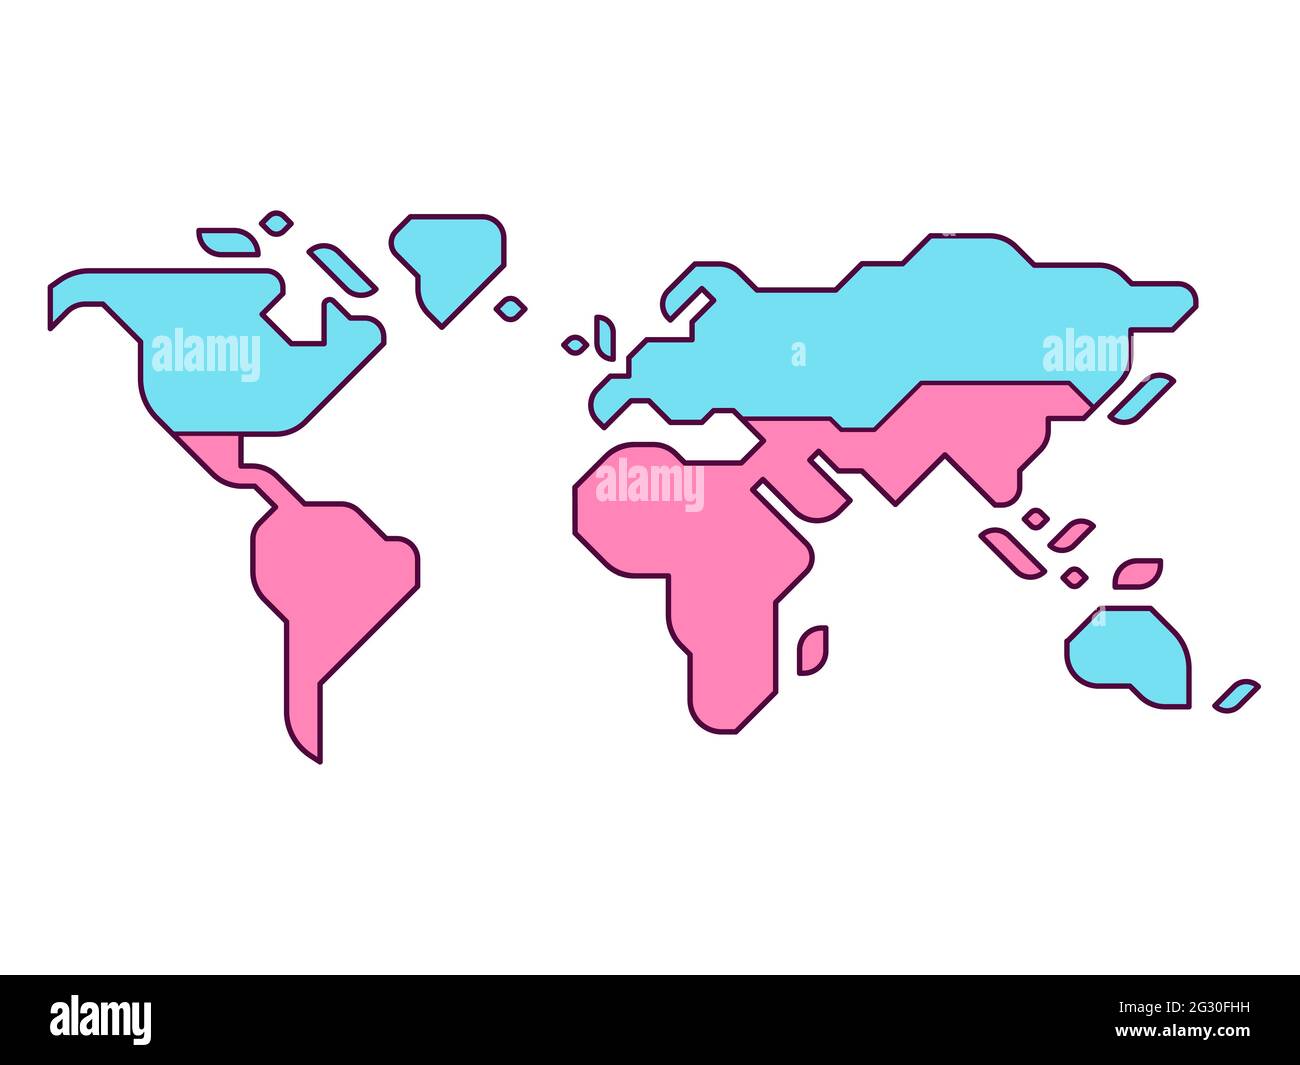 Mappa del mondo semplificata con Global North e Global South divide. Infografica vettoriale piatta moderna, illustrazione di clip art. Illustrazione Vettoriale